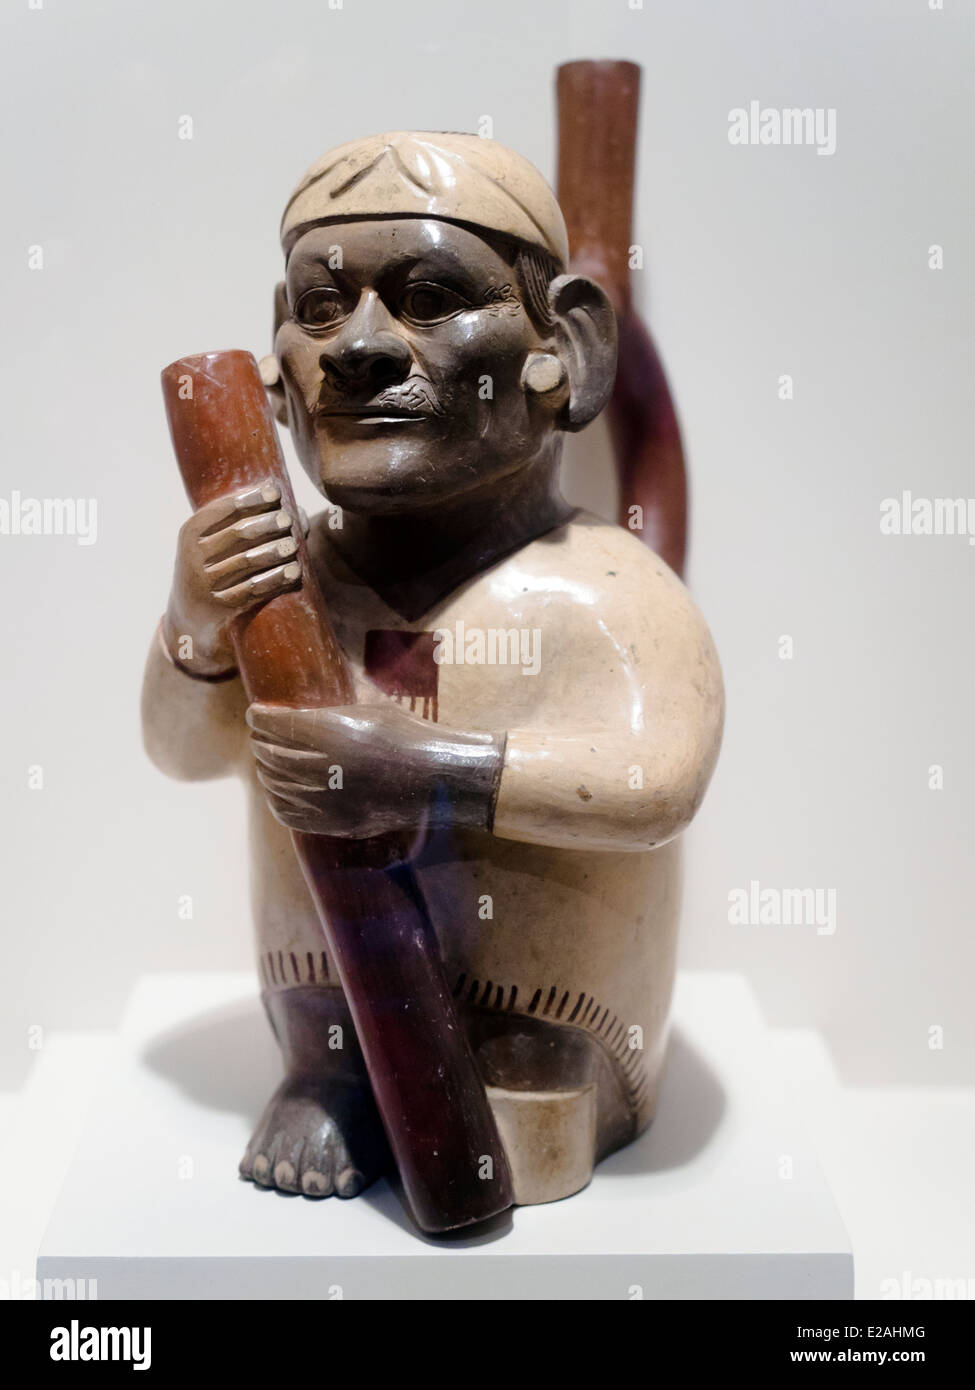 Gestalteten Flasche anthropomorphe Darstellung Mochica klassisch, 1-800 n. Chr. Museo de Arte Precolombino, Cusco - Peru dieser Persönlichkeit in einem offenbar verkrüppelten Zustand drückt eine immense würde und motiviert in die Betrachter Gefühle diametral entgegengesetzt zu Mitgefühl, sondern eher vergleichbar mit Respekt und Wertschätzung. Extreem Realismus ist nicht nur durch die Kapazität um das gewünschte Bild darzustellen mit dotierten nachhaltig eine schwach Hyratic Haltung, aber in der angepassten Einsatz von Farben und Details der Dekoration wie die zarte kleinen Eidechsen, die aus den Ecken entstehen die Stockfoto